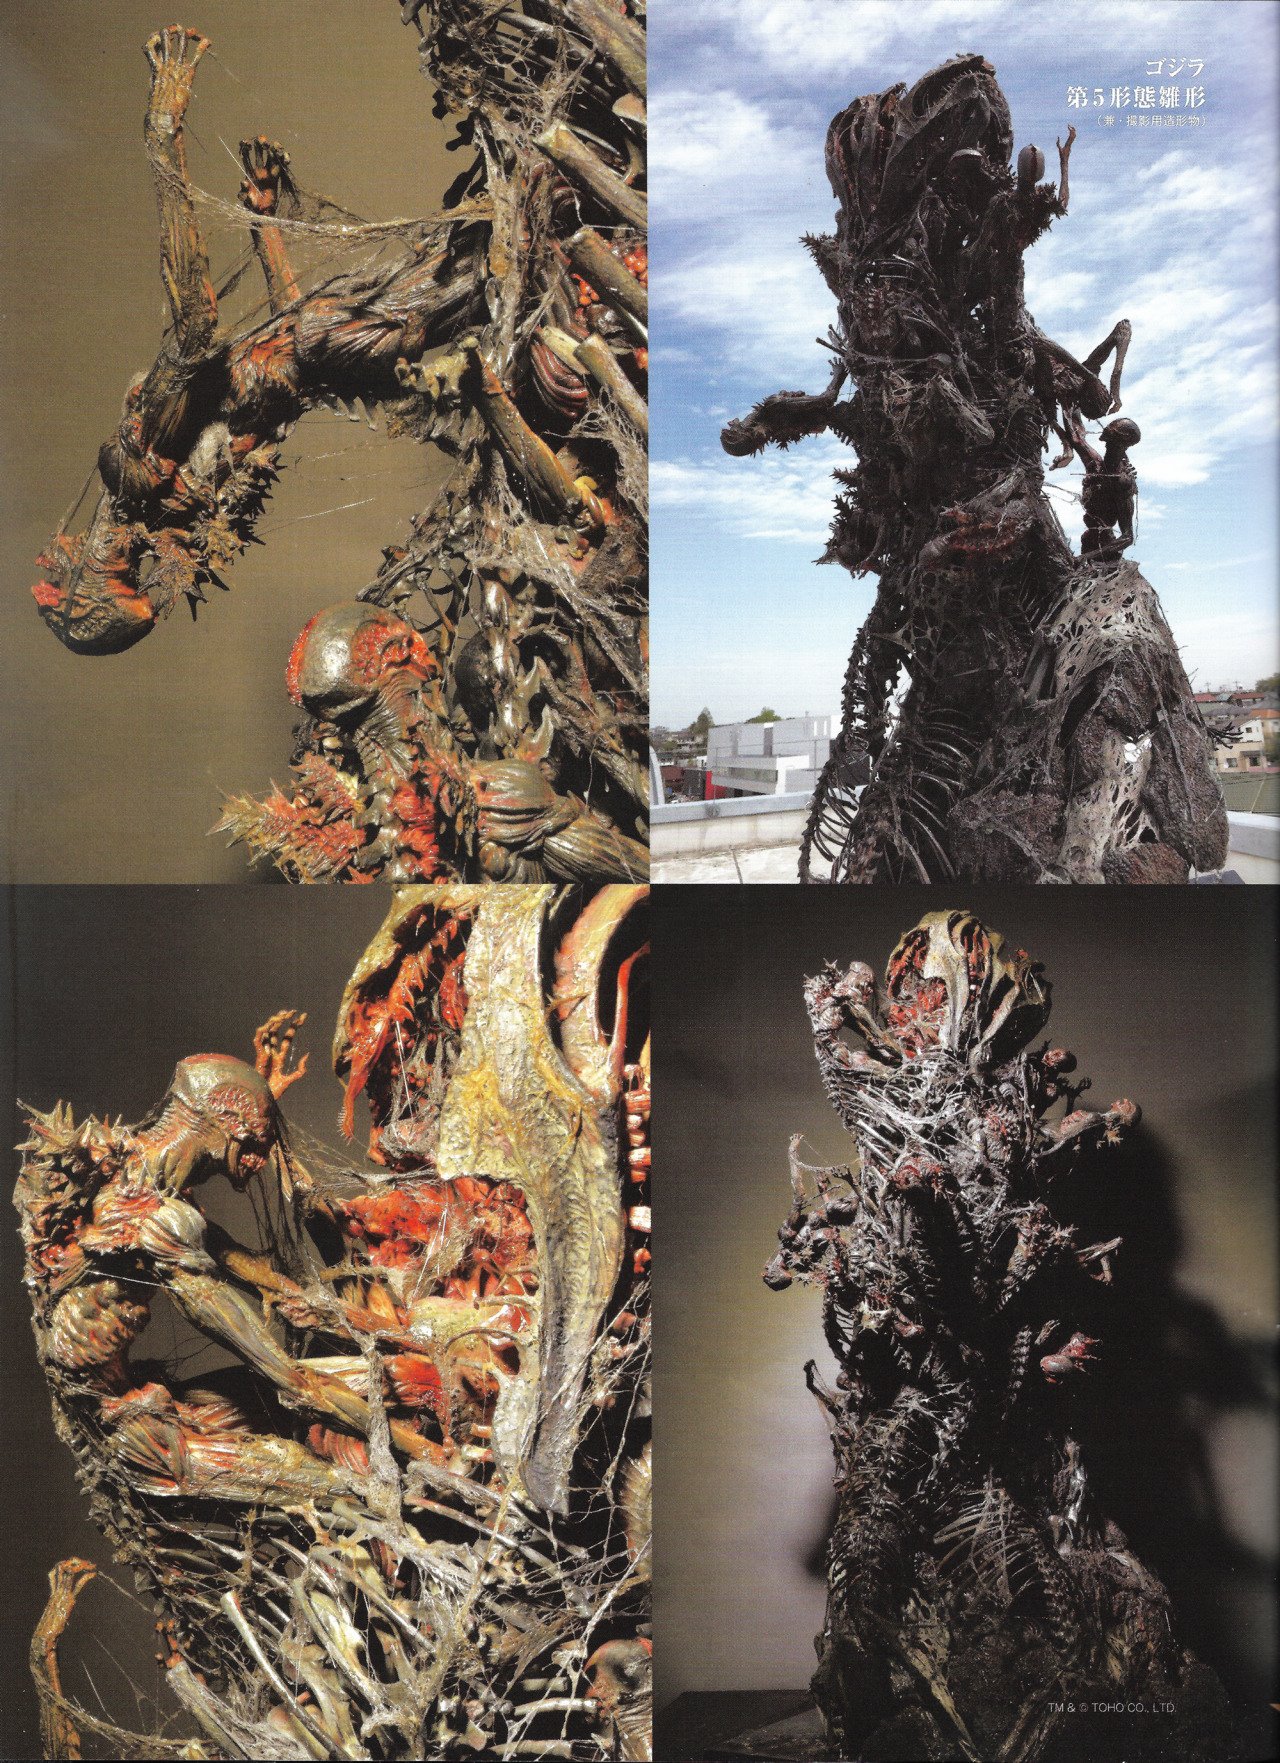 Epic Shin-Godzilla sculpture by Takayuki Takeya - Shin-Gojira Forum